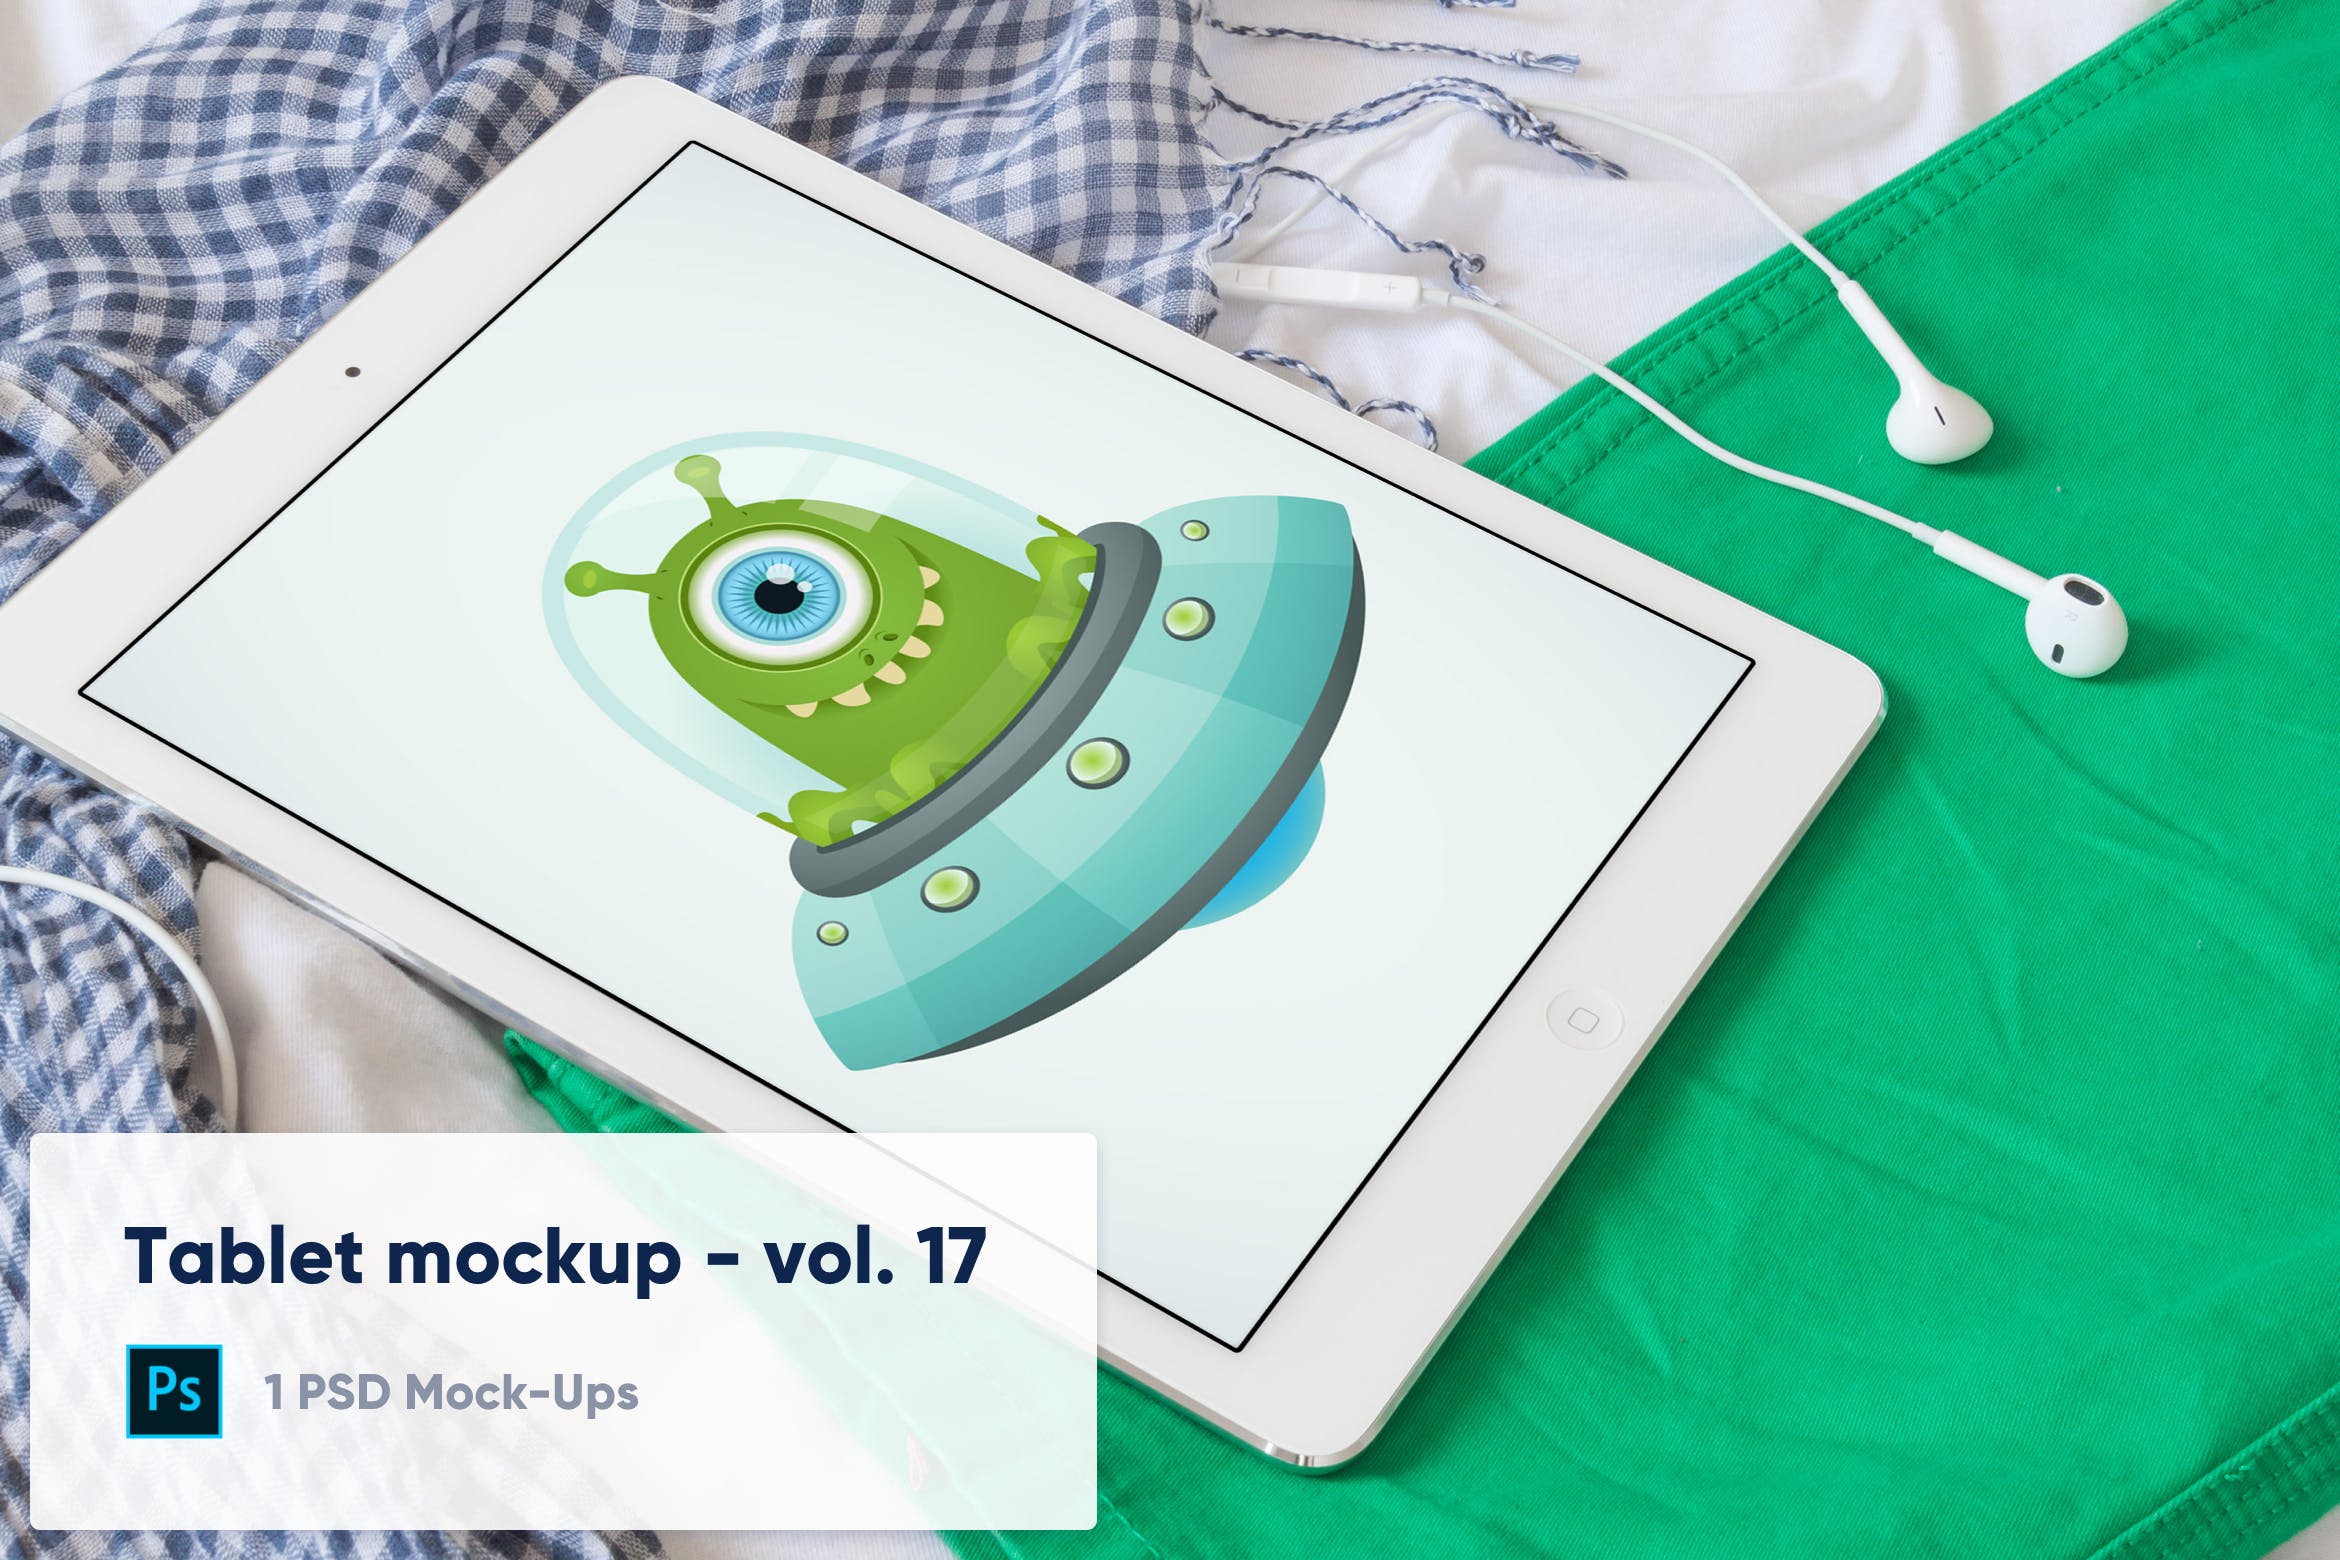 居家环境场景平板电脑屏幕演示第一素材精选样机模板v17 Tablet on Colorful Clothes Mockup – Vol. 17插图